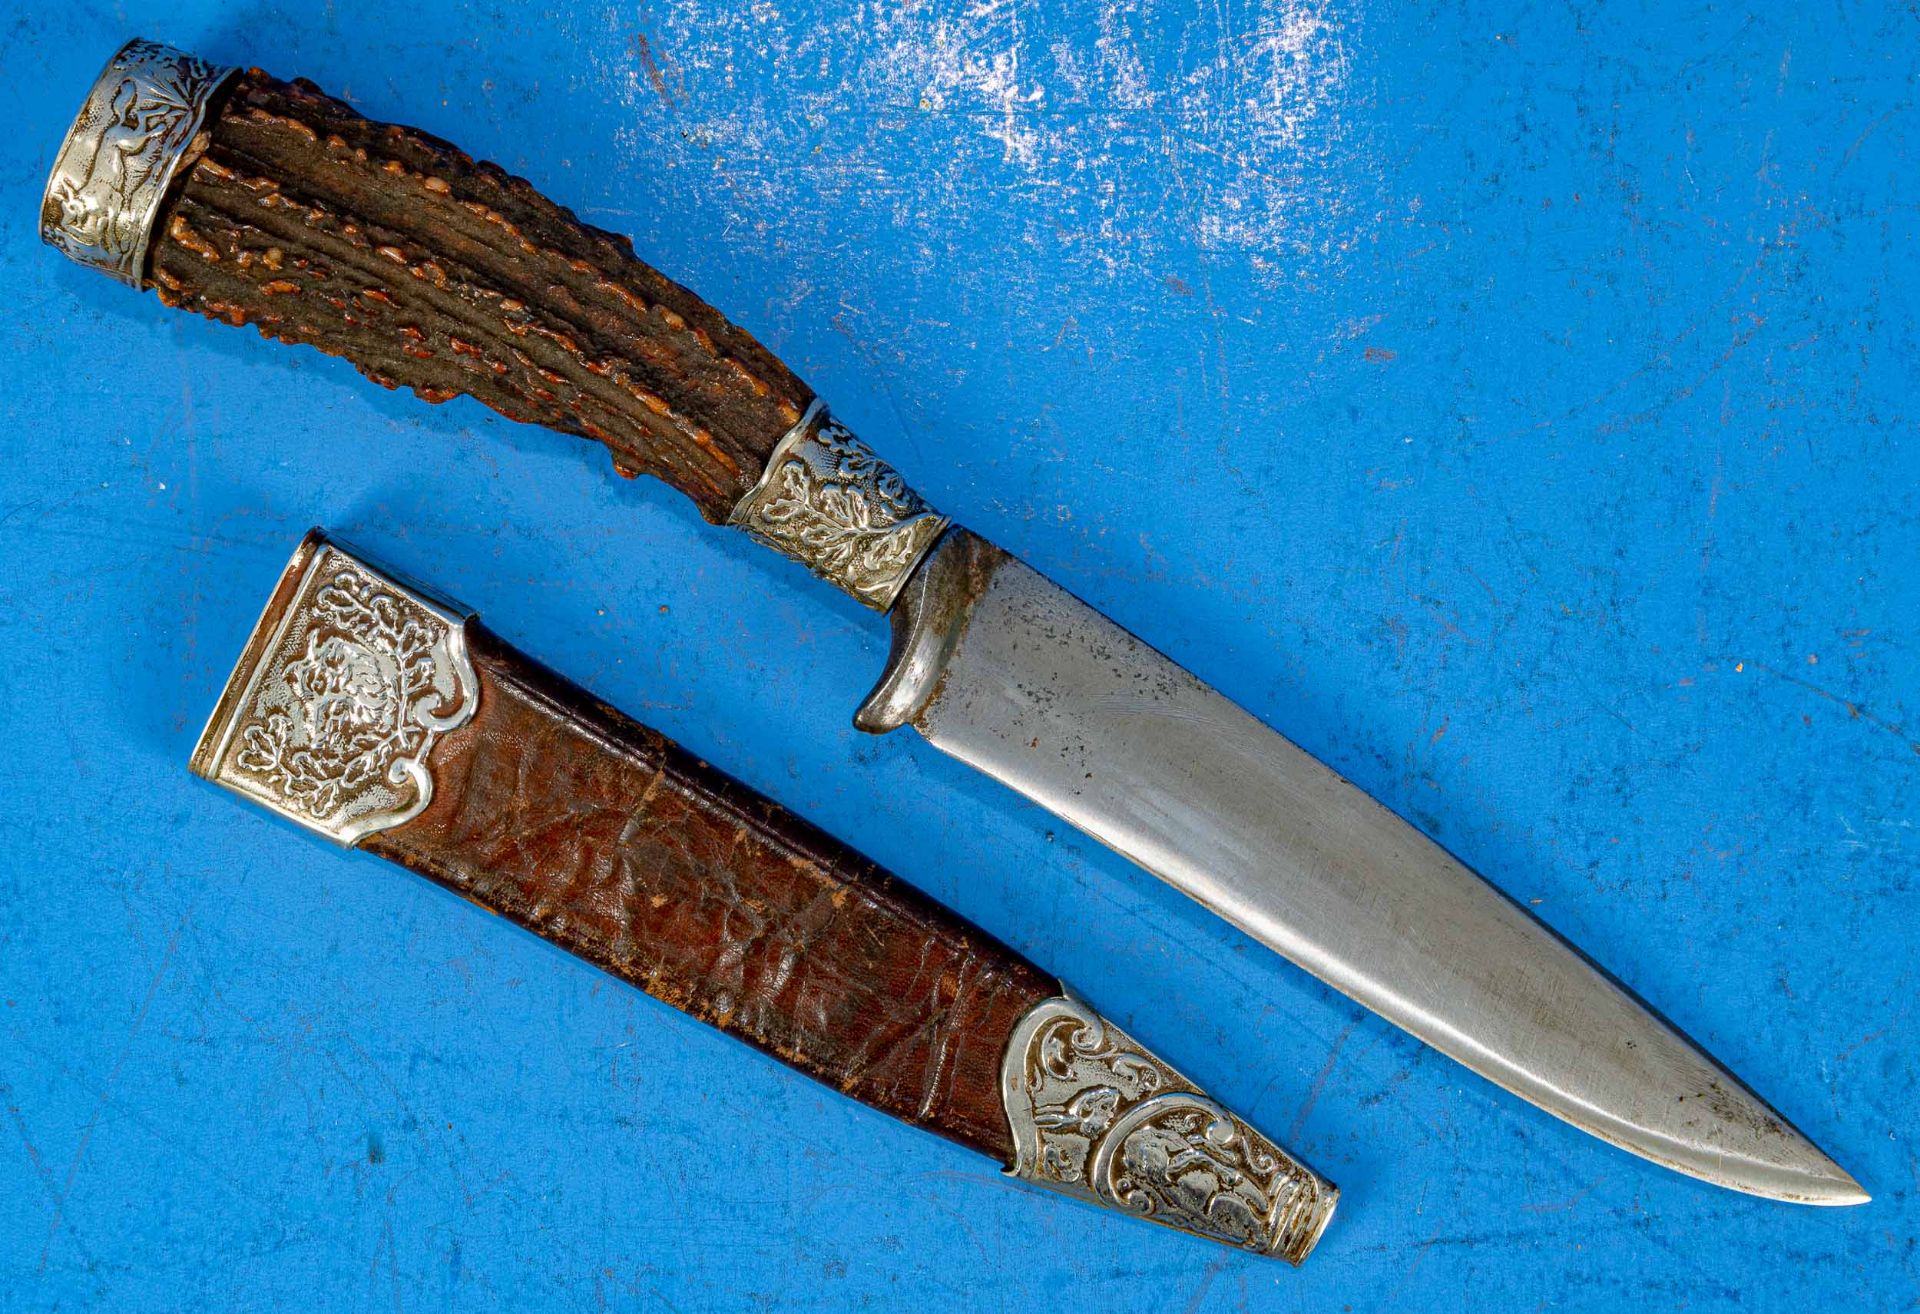 3tlg. Konvolut "Jagdliches", bestehend aus 2 kleinen Messern, Hirschhorngriffe in metallbeschlagene - Bild 6 aus 9